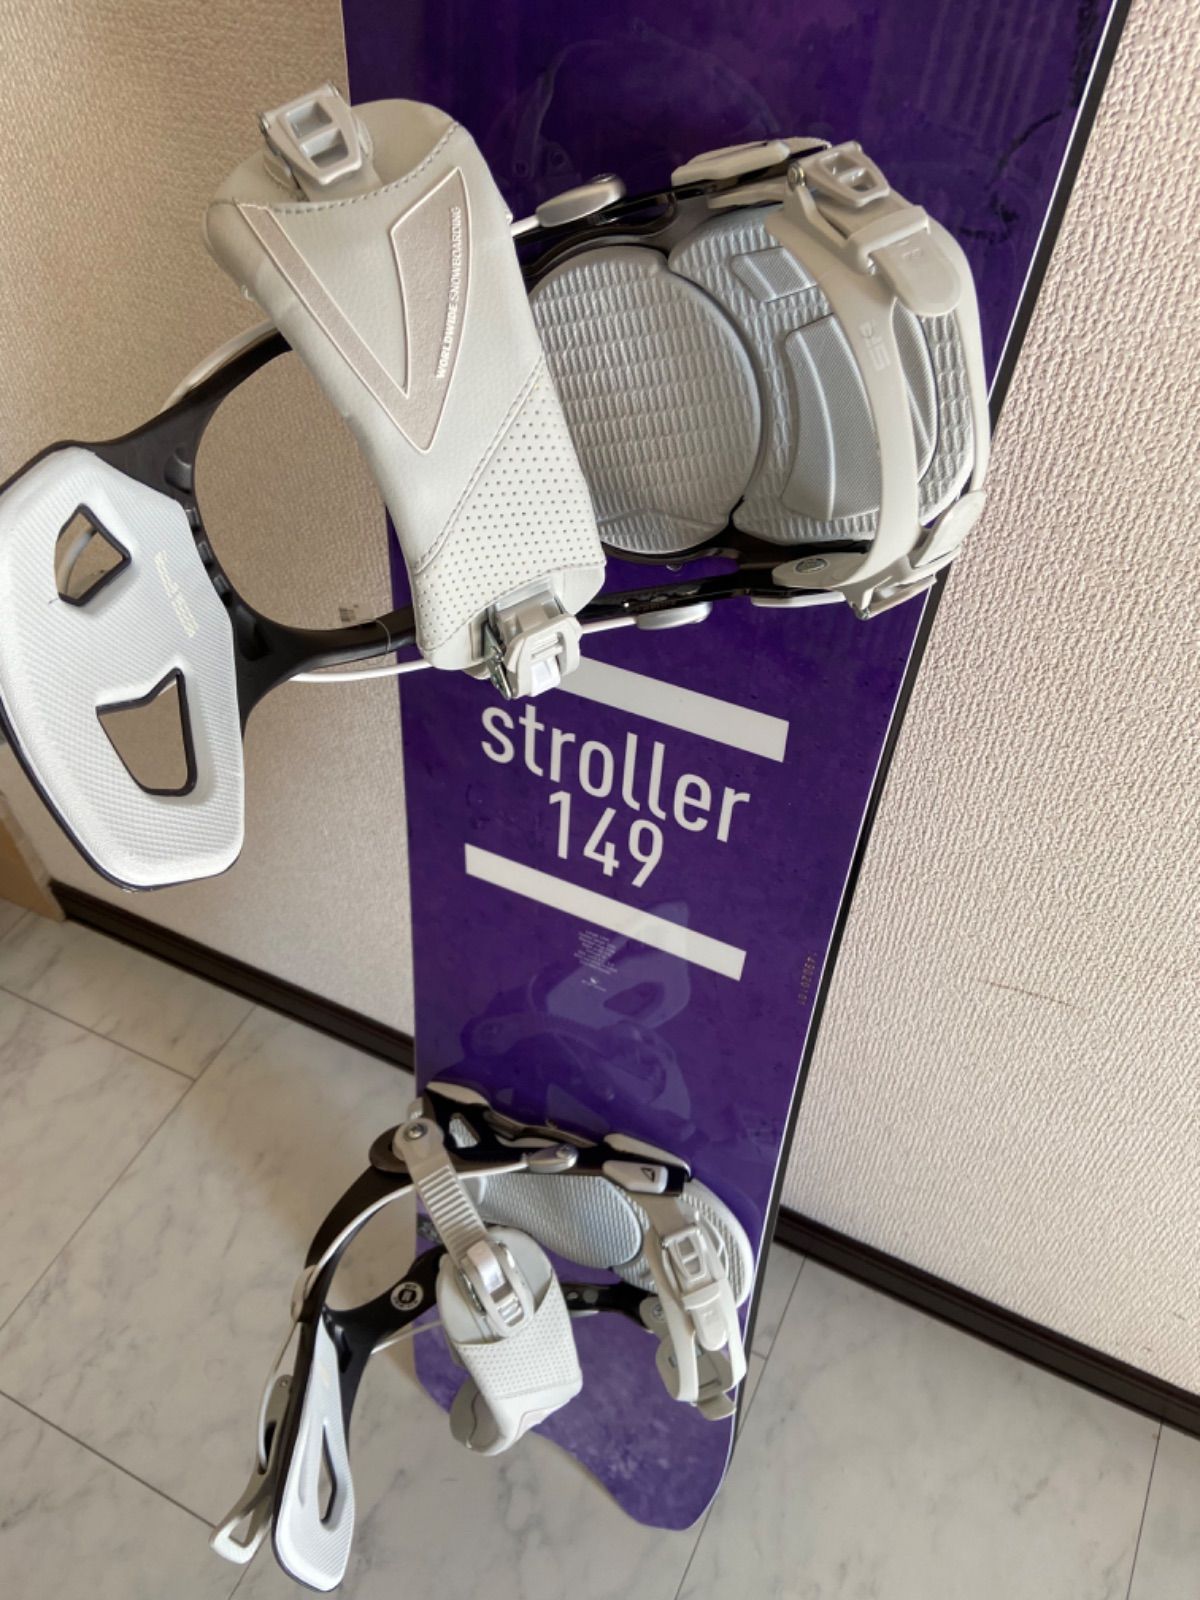 スノーボード 板 UNIT mfg Stroller 149 パウダーボード - メルカリ